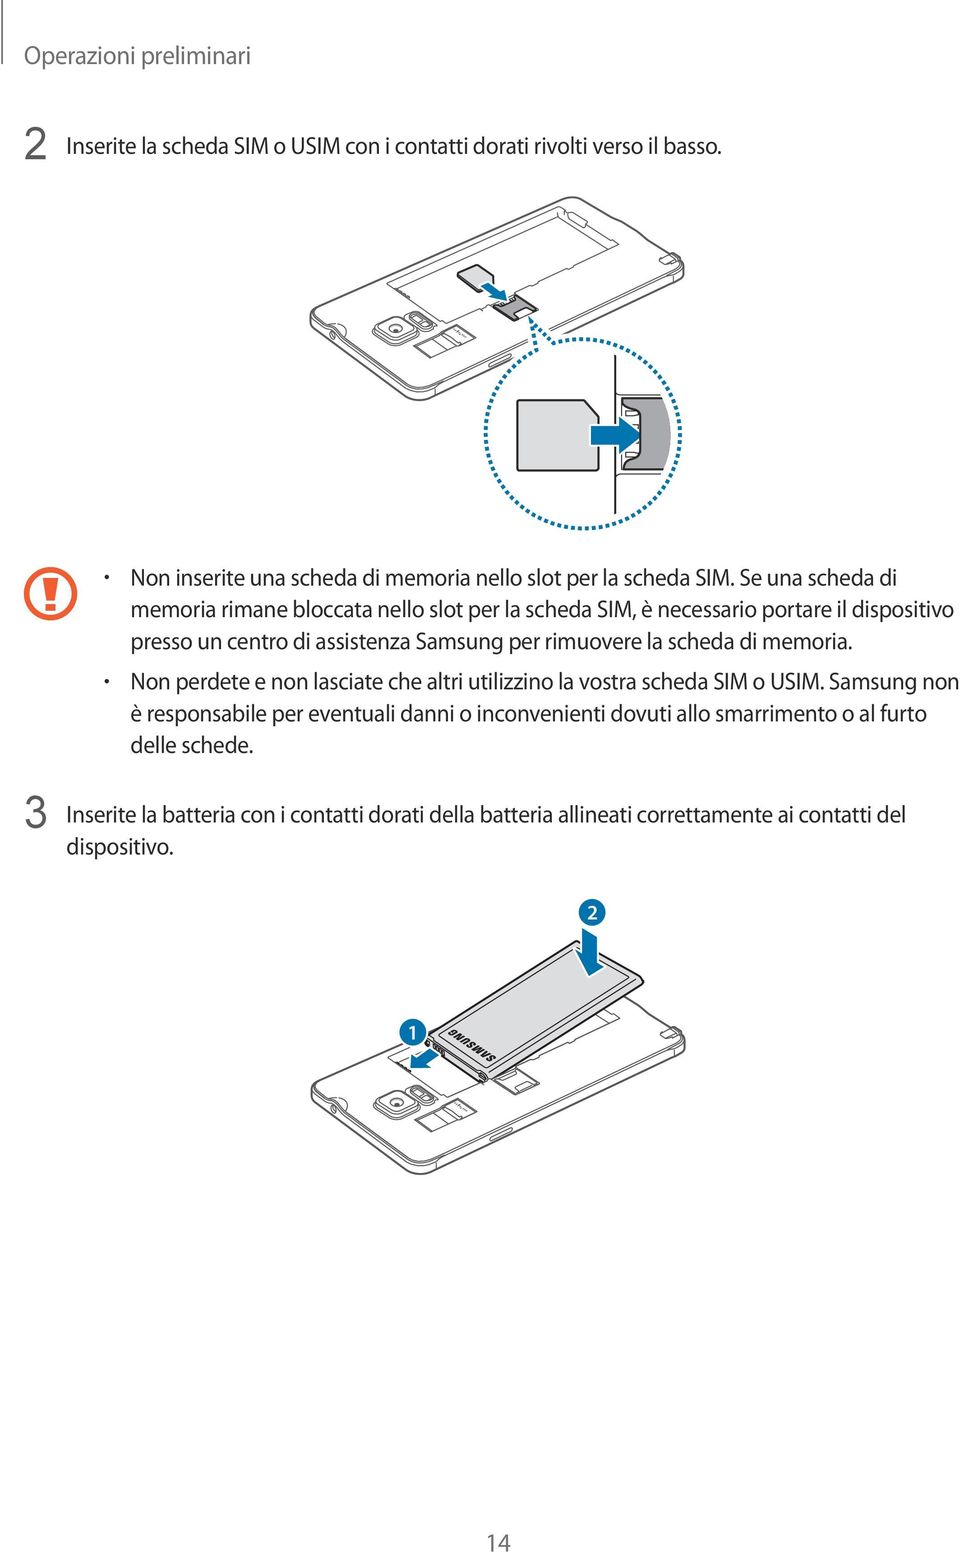 Se una scheda di memoria rimane bloccata nello slot per la scheda SIM, è necessario portare il dispositivo presso un centro di assistenza Samsung per rimuovere la